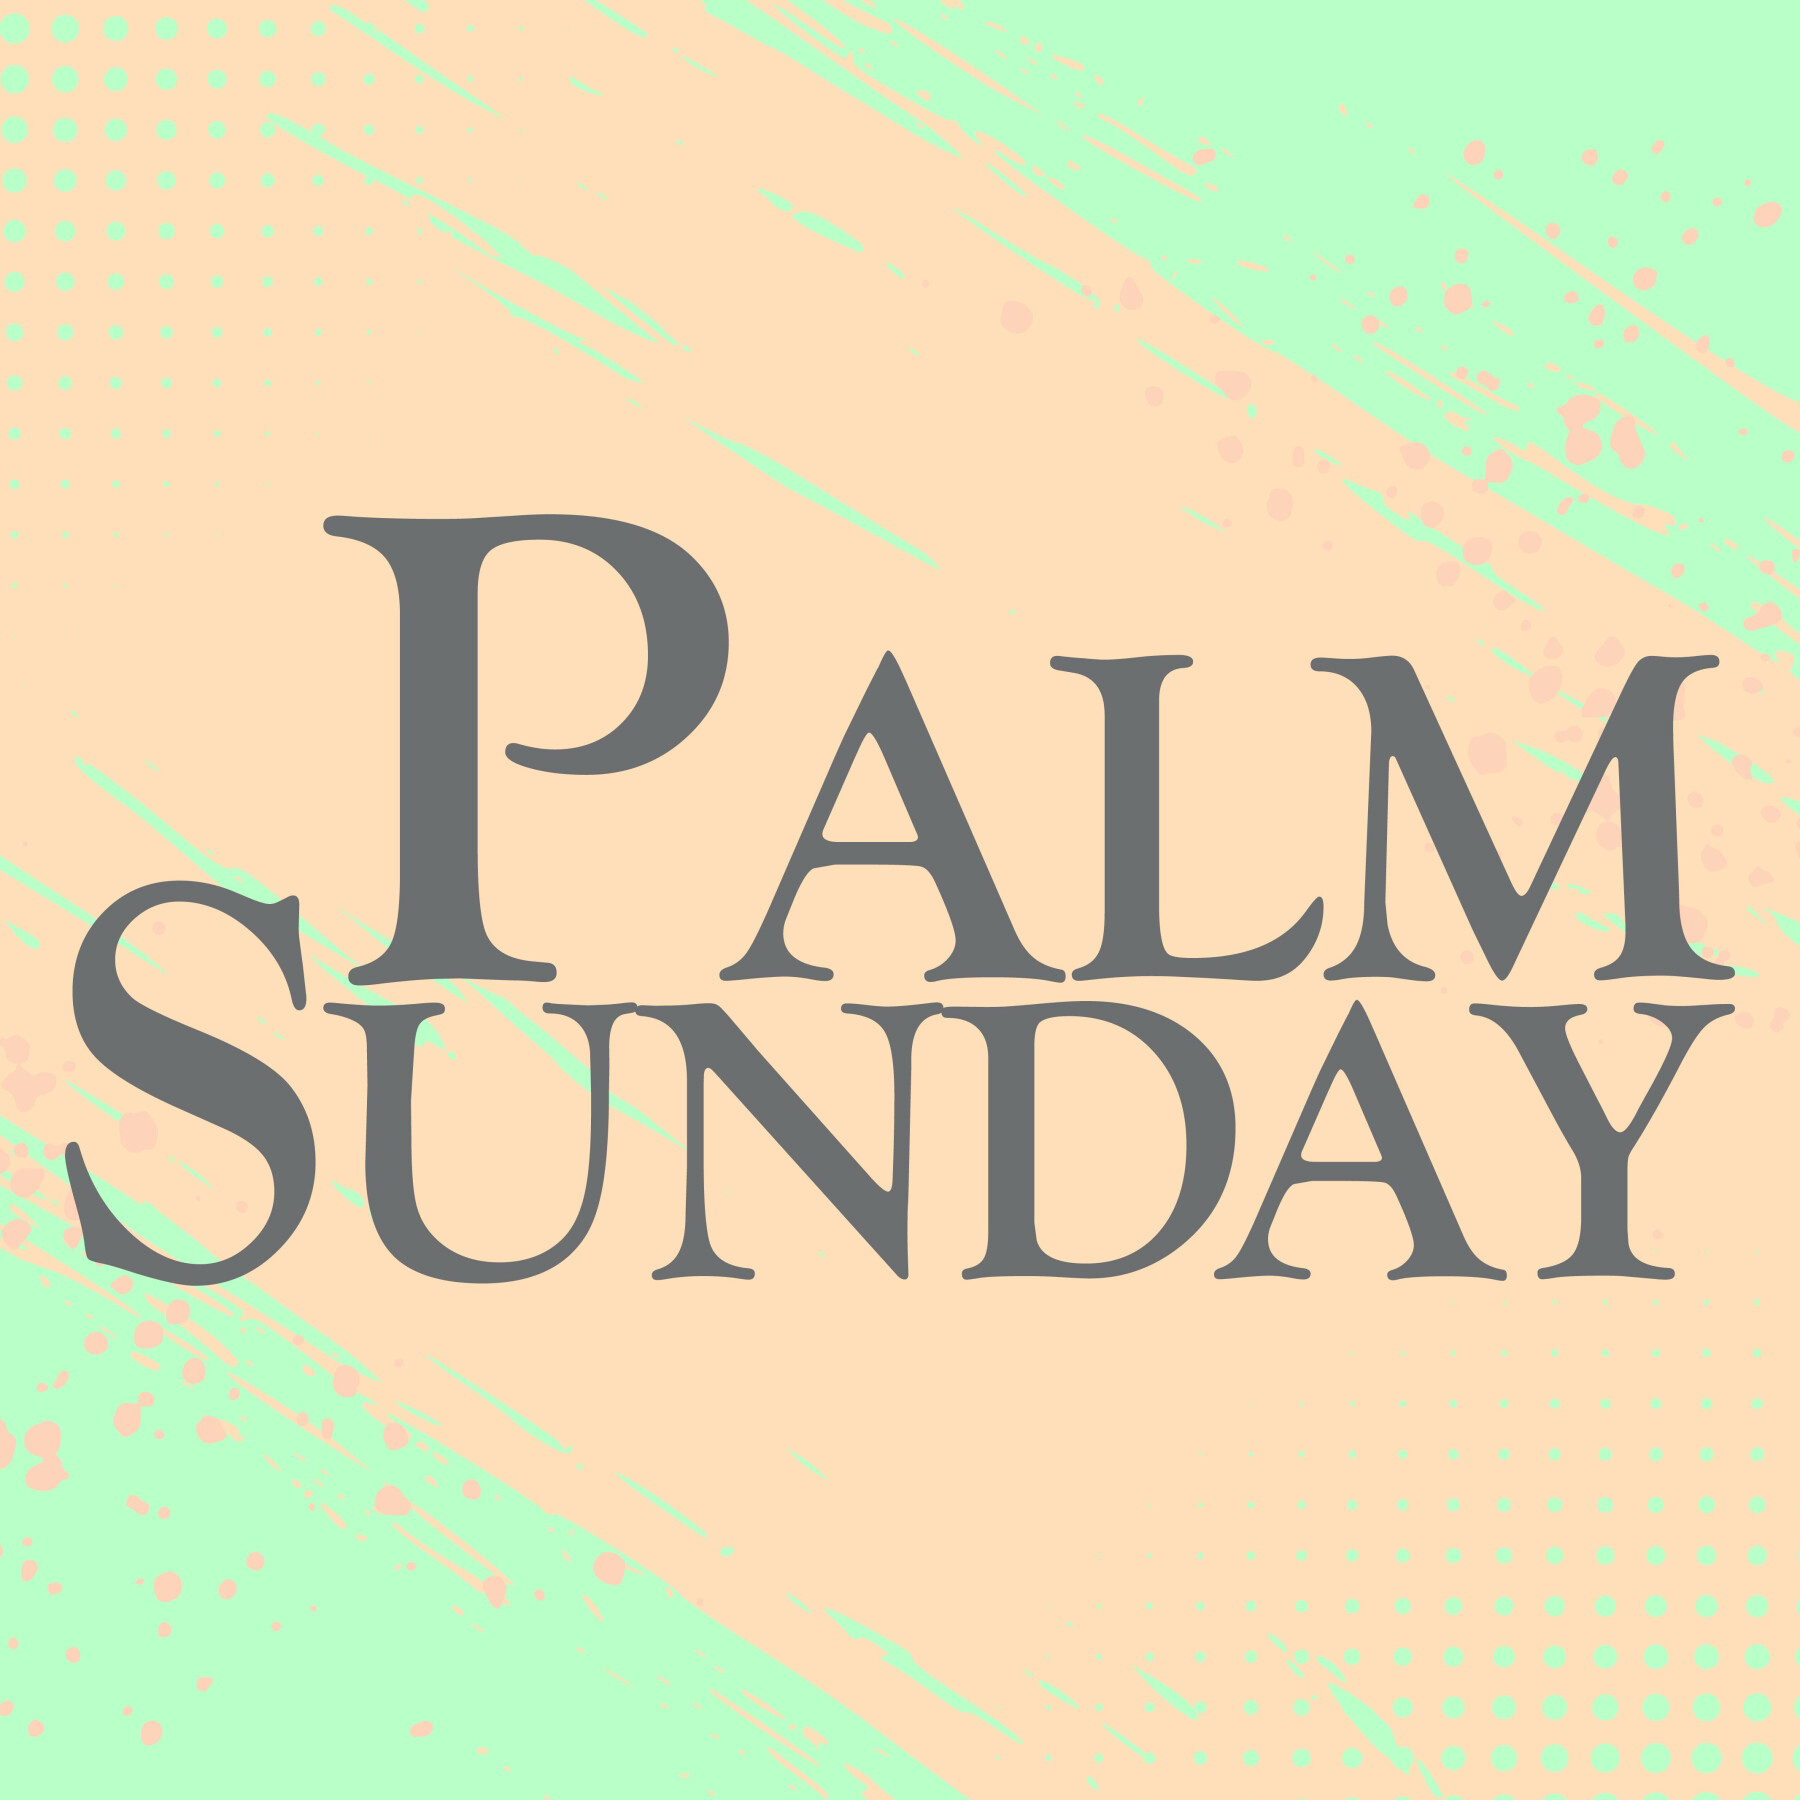 Palm Sunday Service 10:30AM